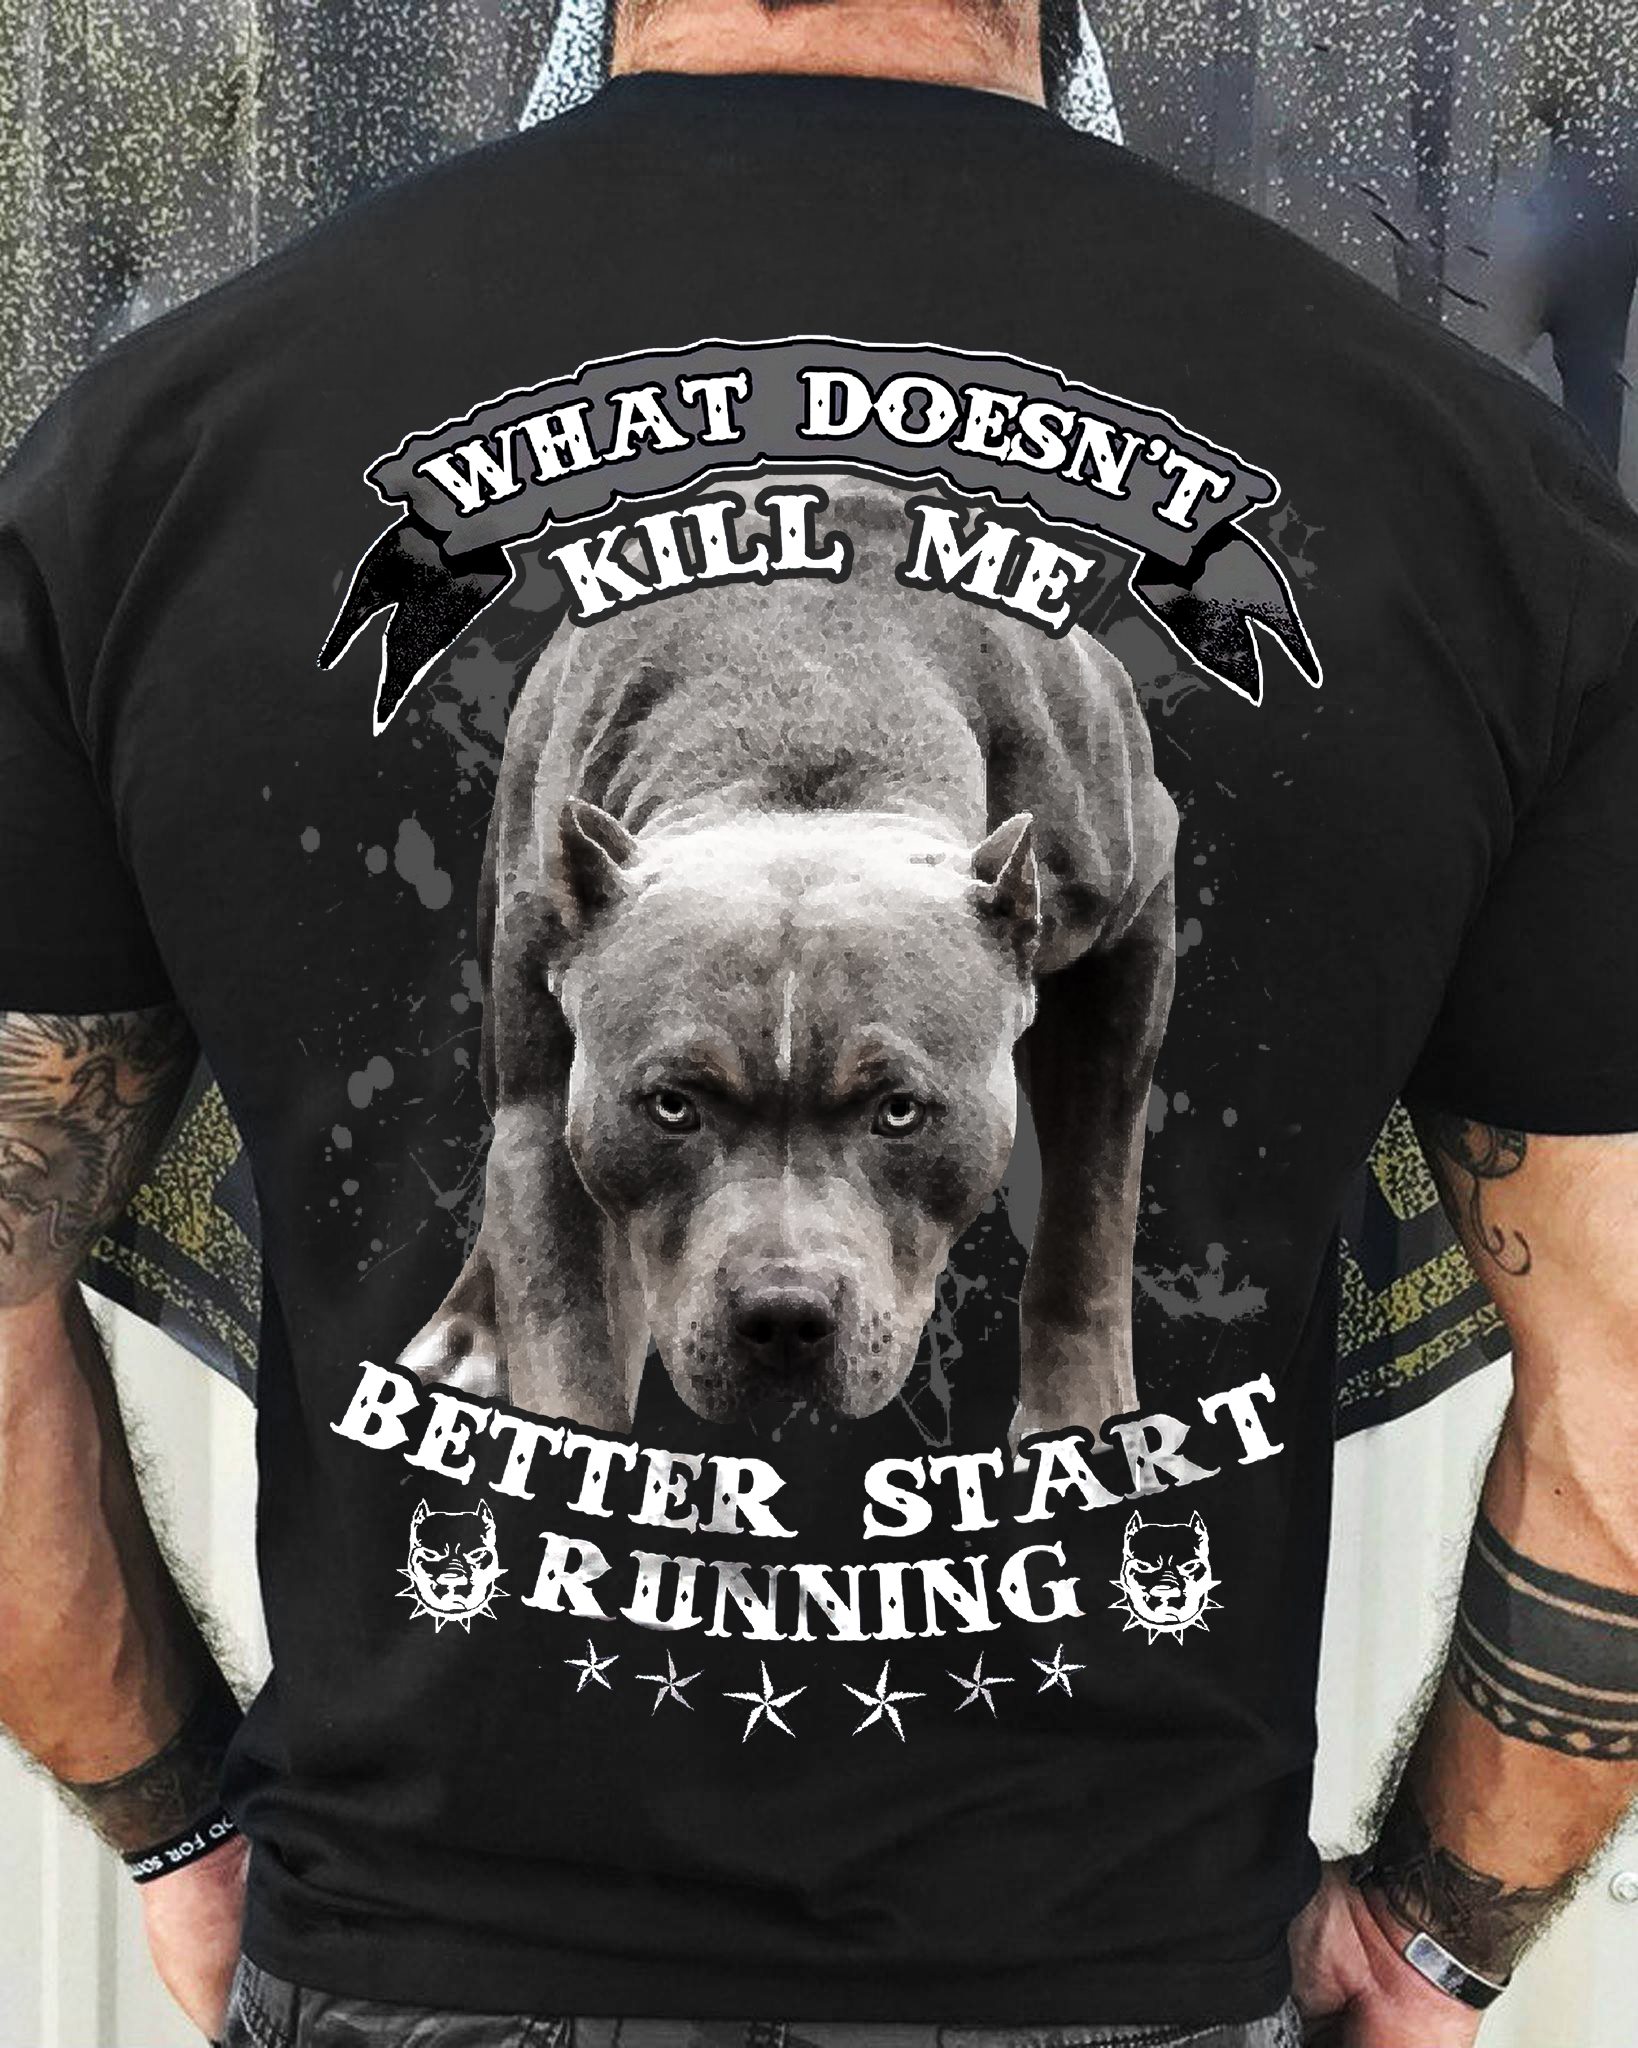 What doesn't kill me better start running - Pitbull dog, dog lover